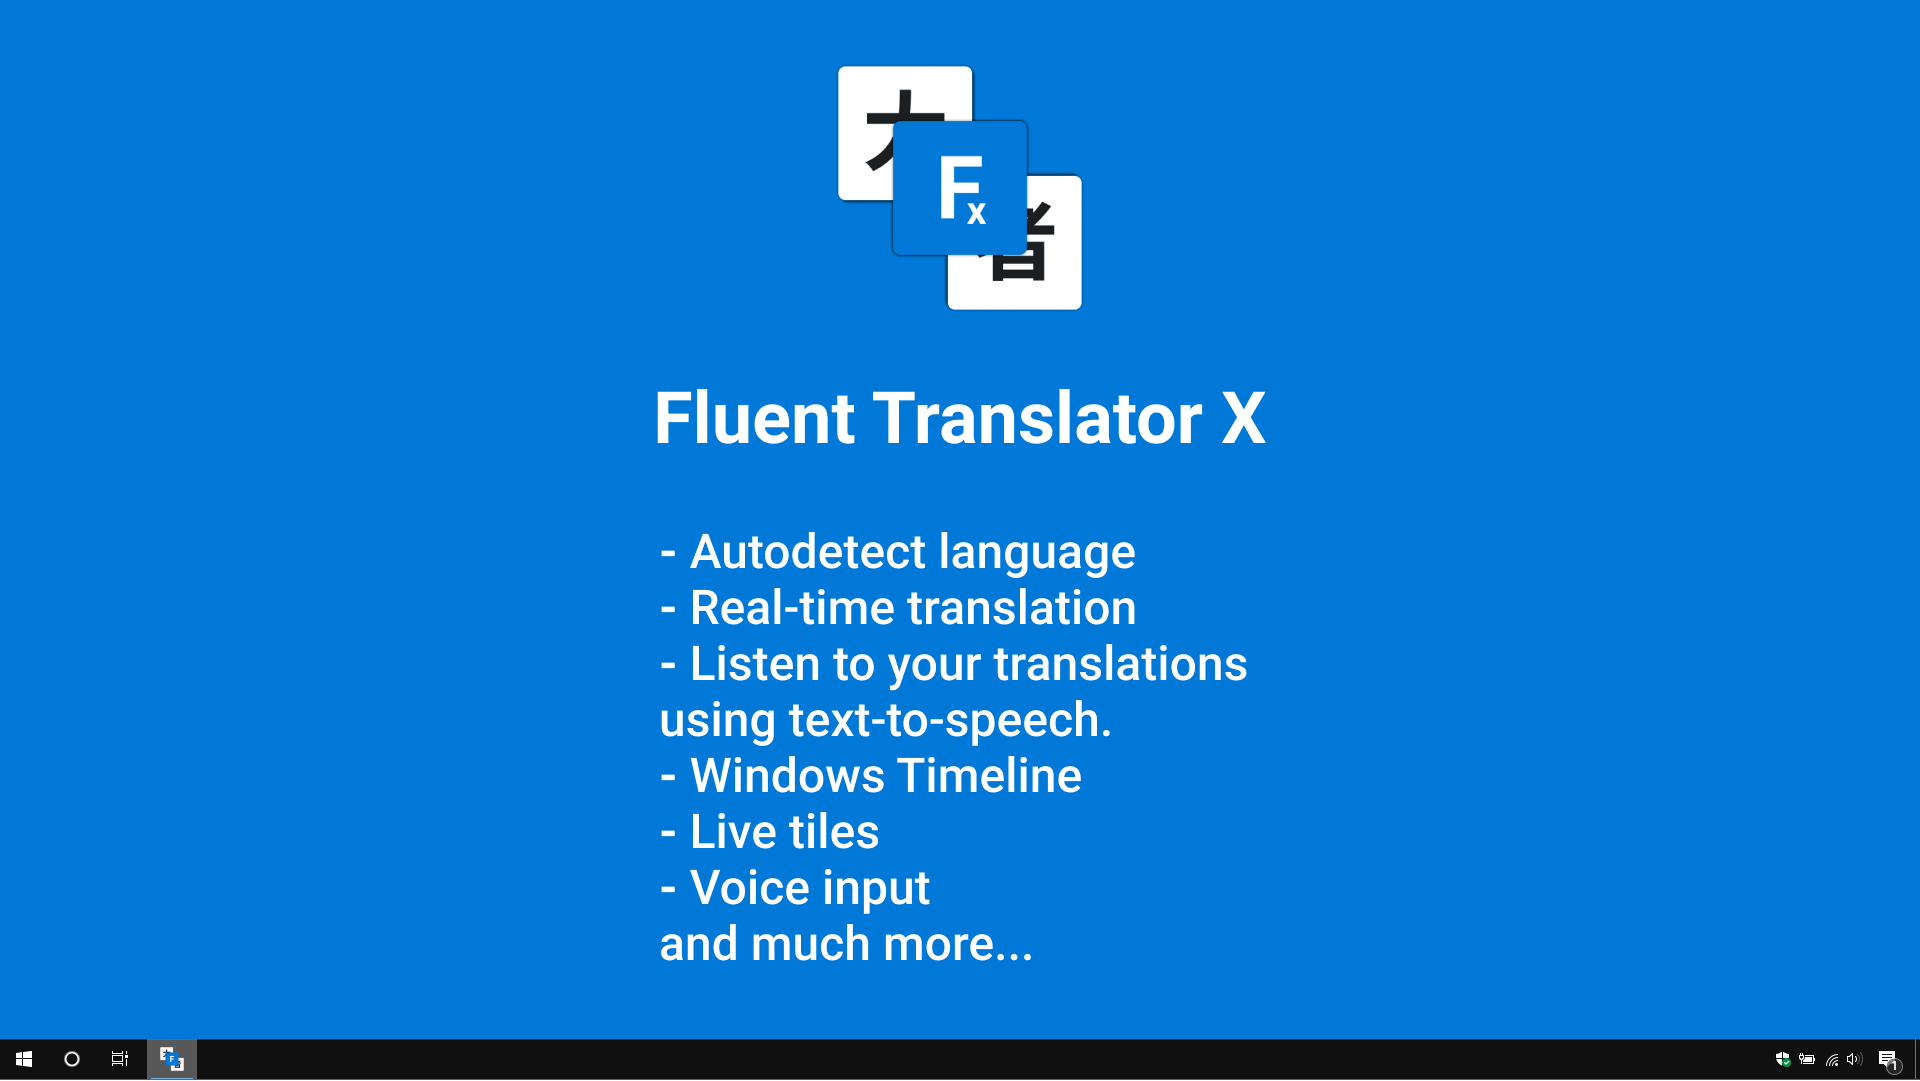 Fluent Translator X